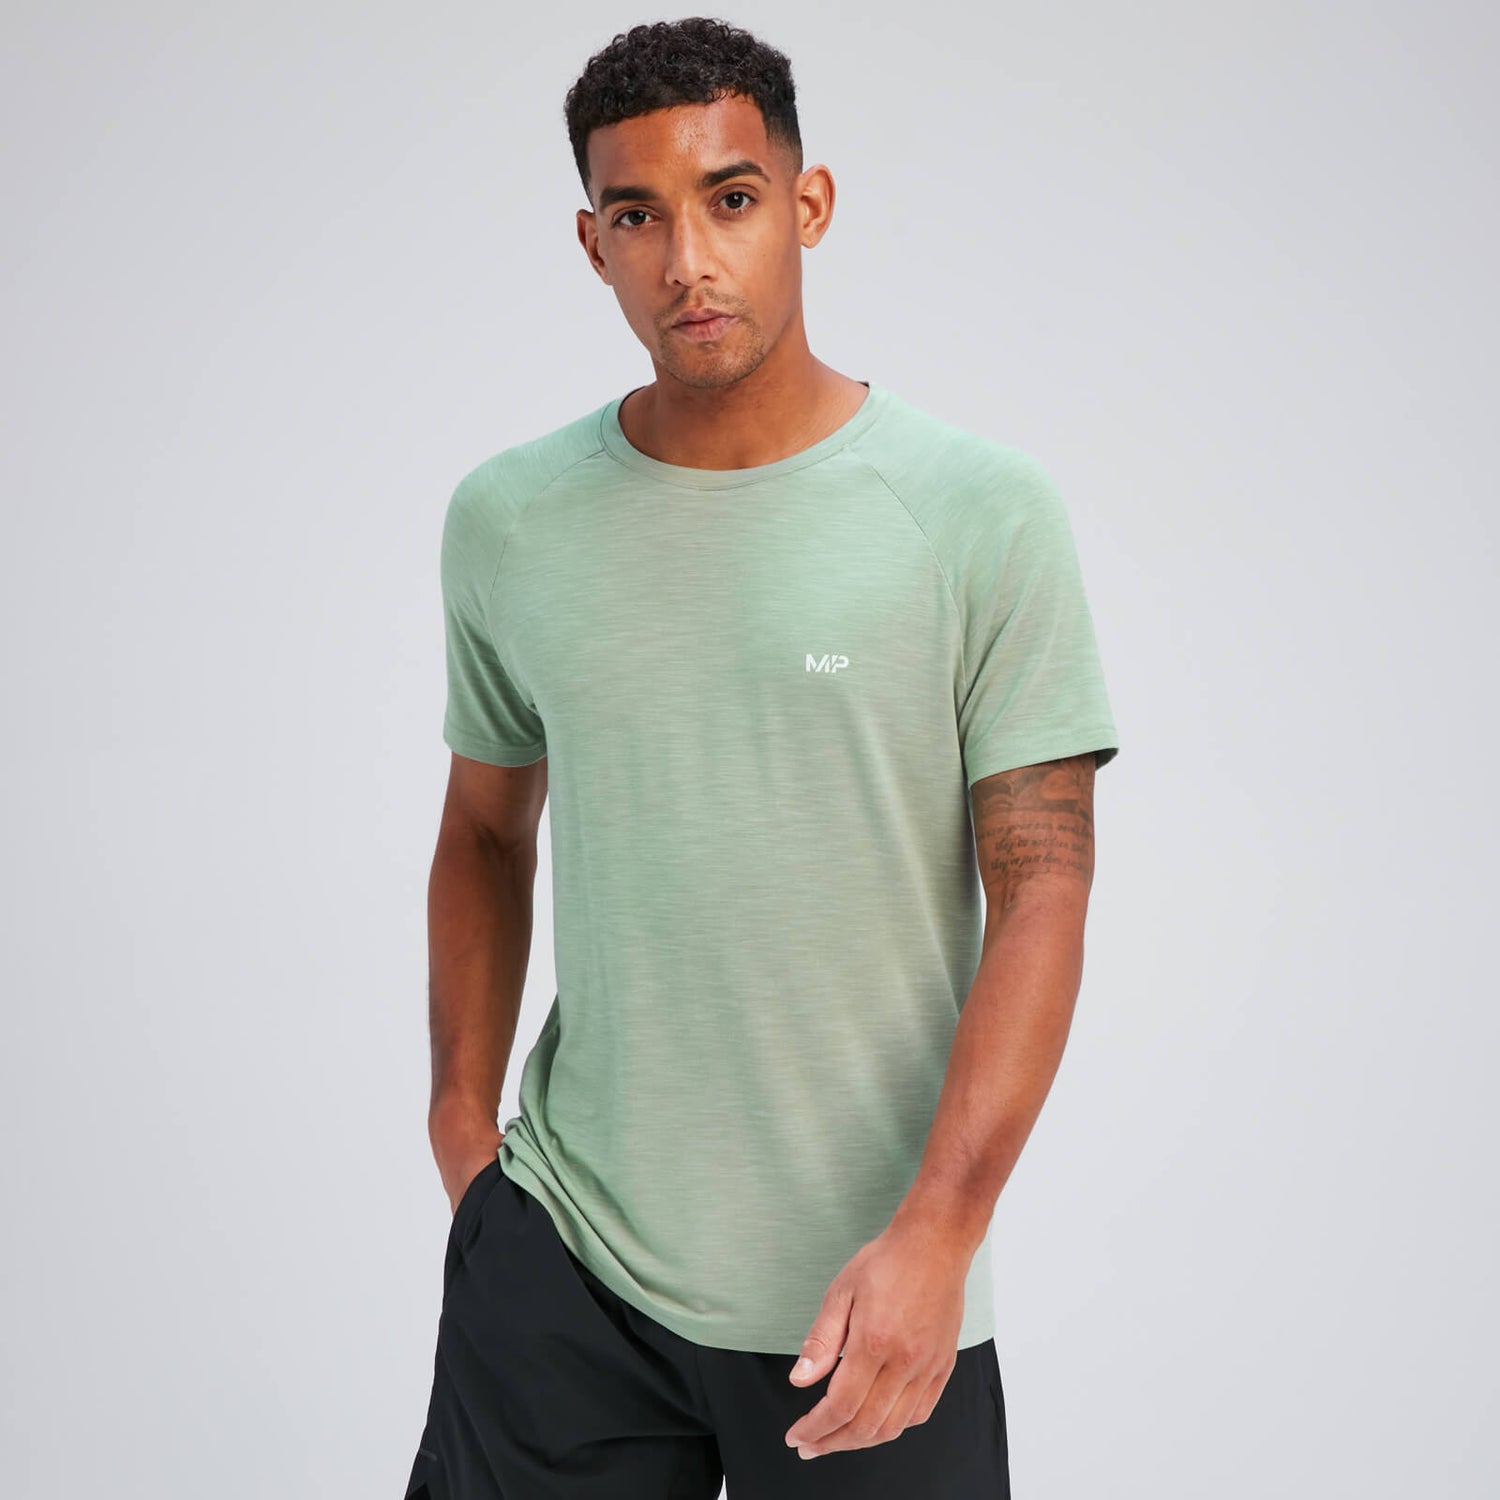 Мужская футболка с короткими рукавами MP Performance — светло-зеленый цвет